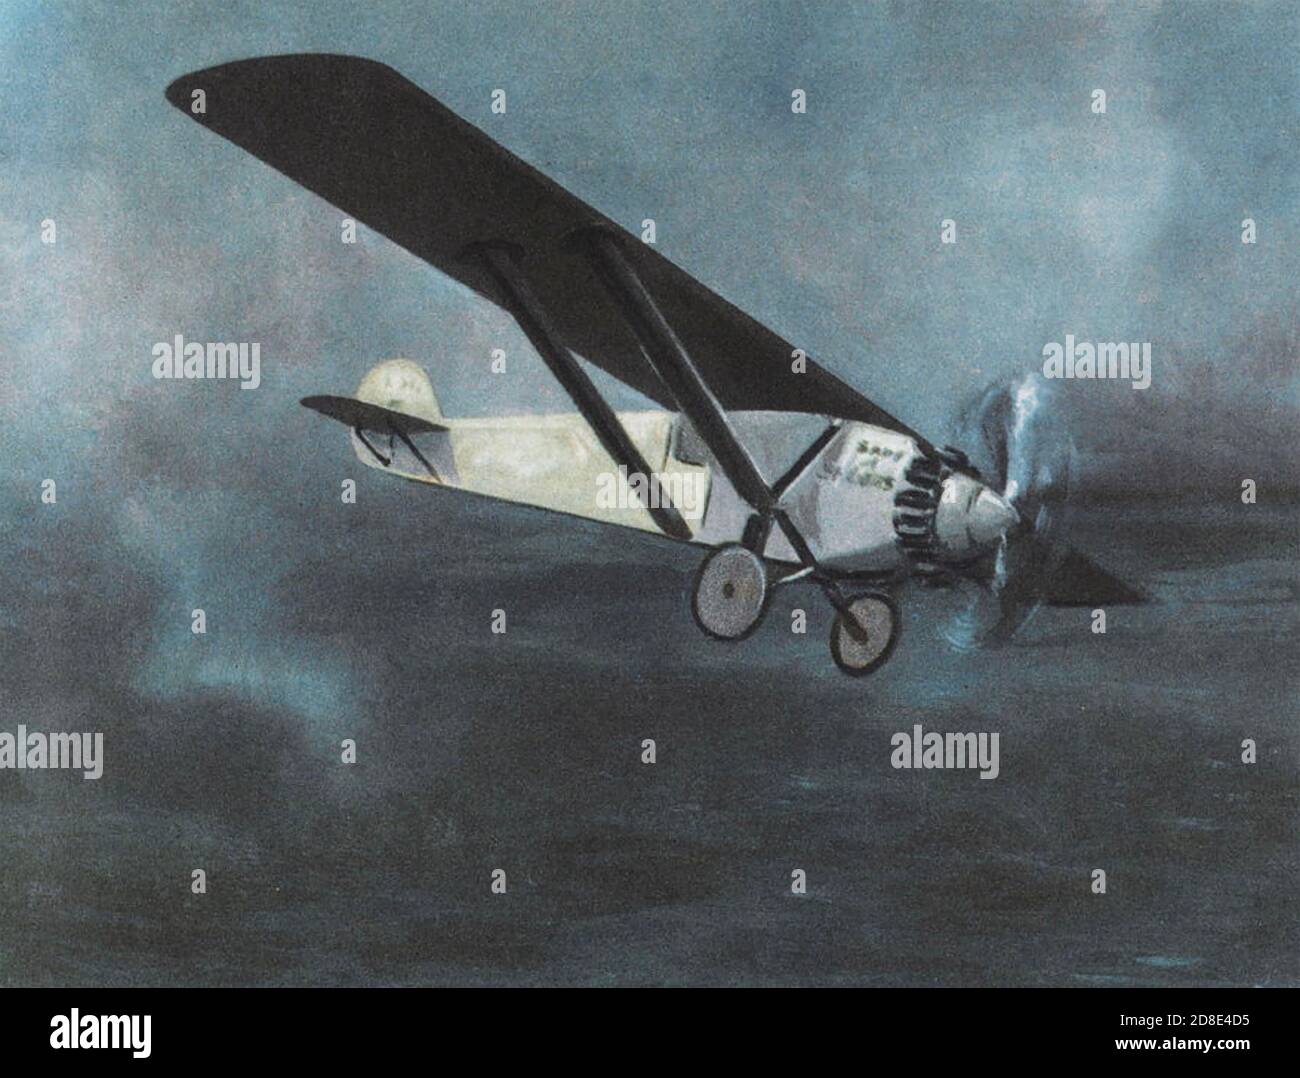 SPIRIT OF ST LOUIS - RYAN NYP. Piloté par Charles Lindbergh lors du premier vol transatlantique sans escale en mai 1927 Banque D'Images